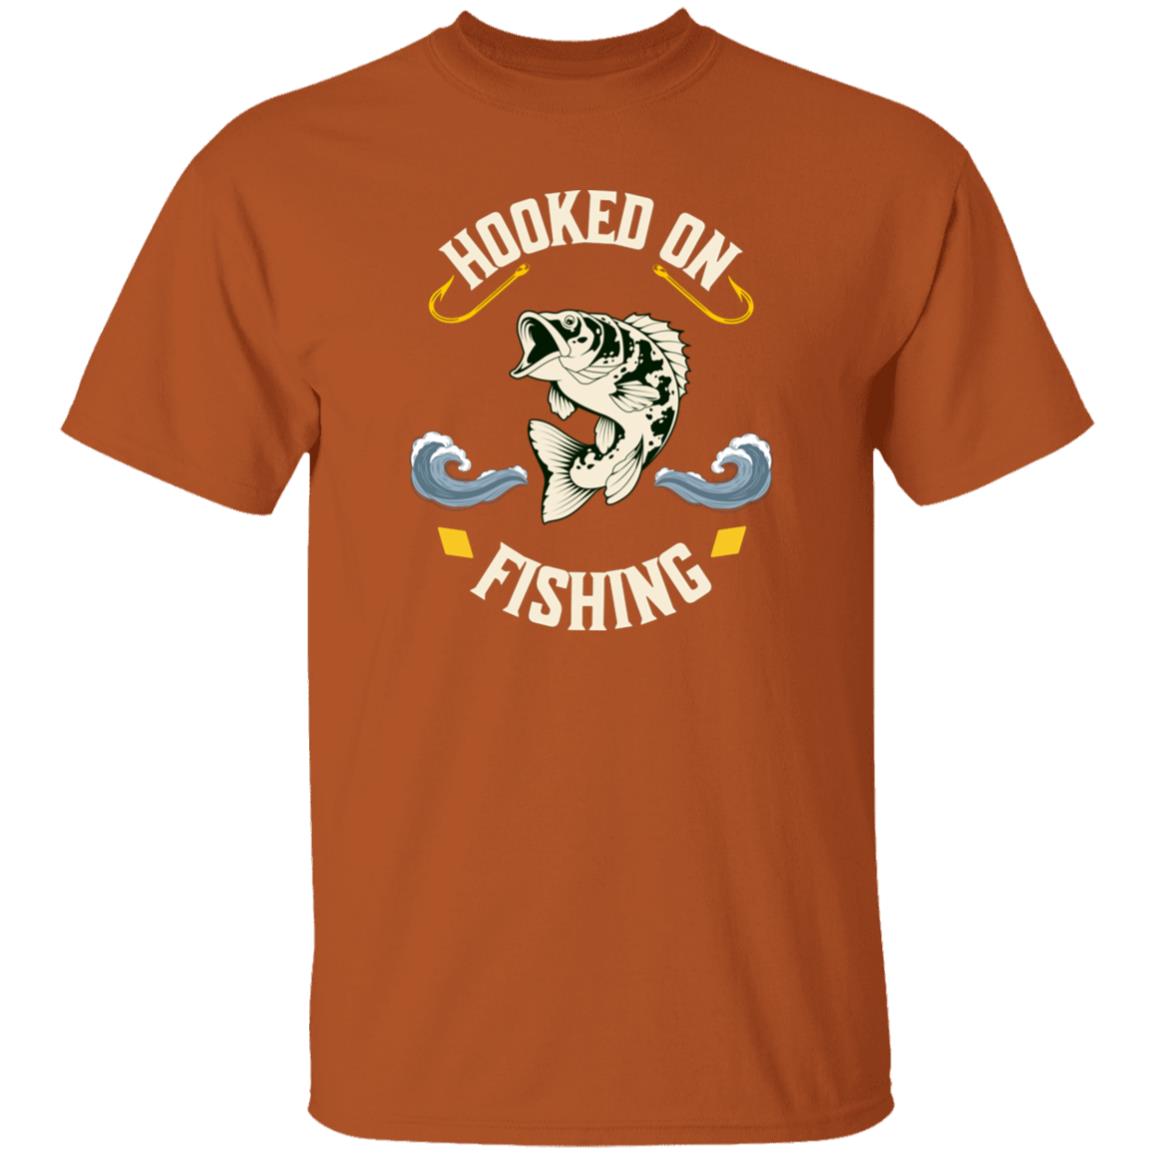 Hooked on fishing t-shirt k texas-orange